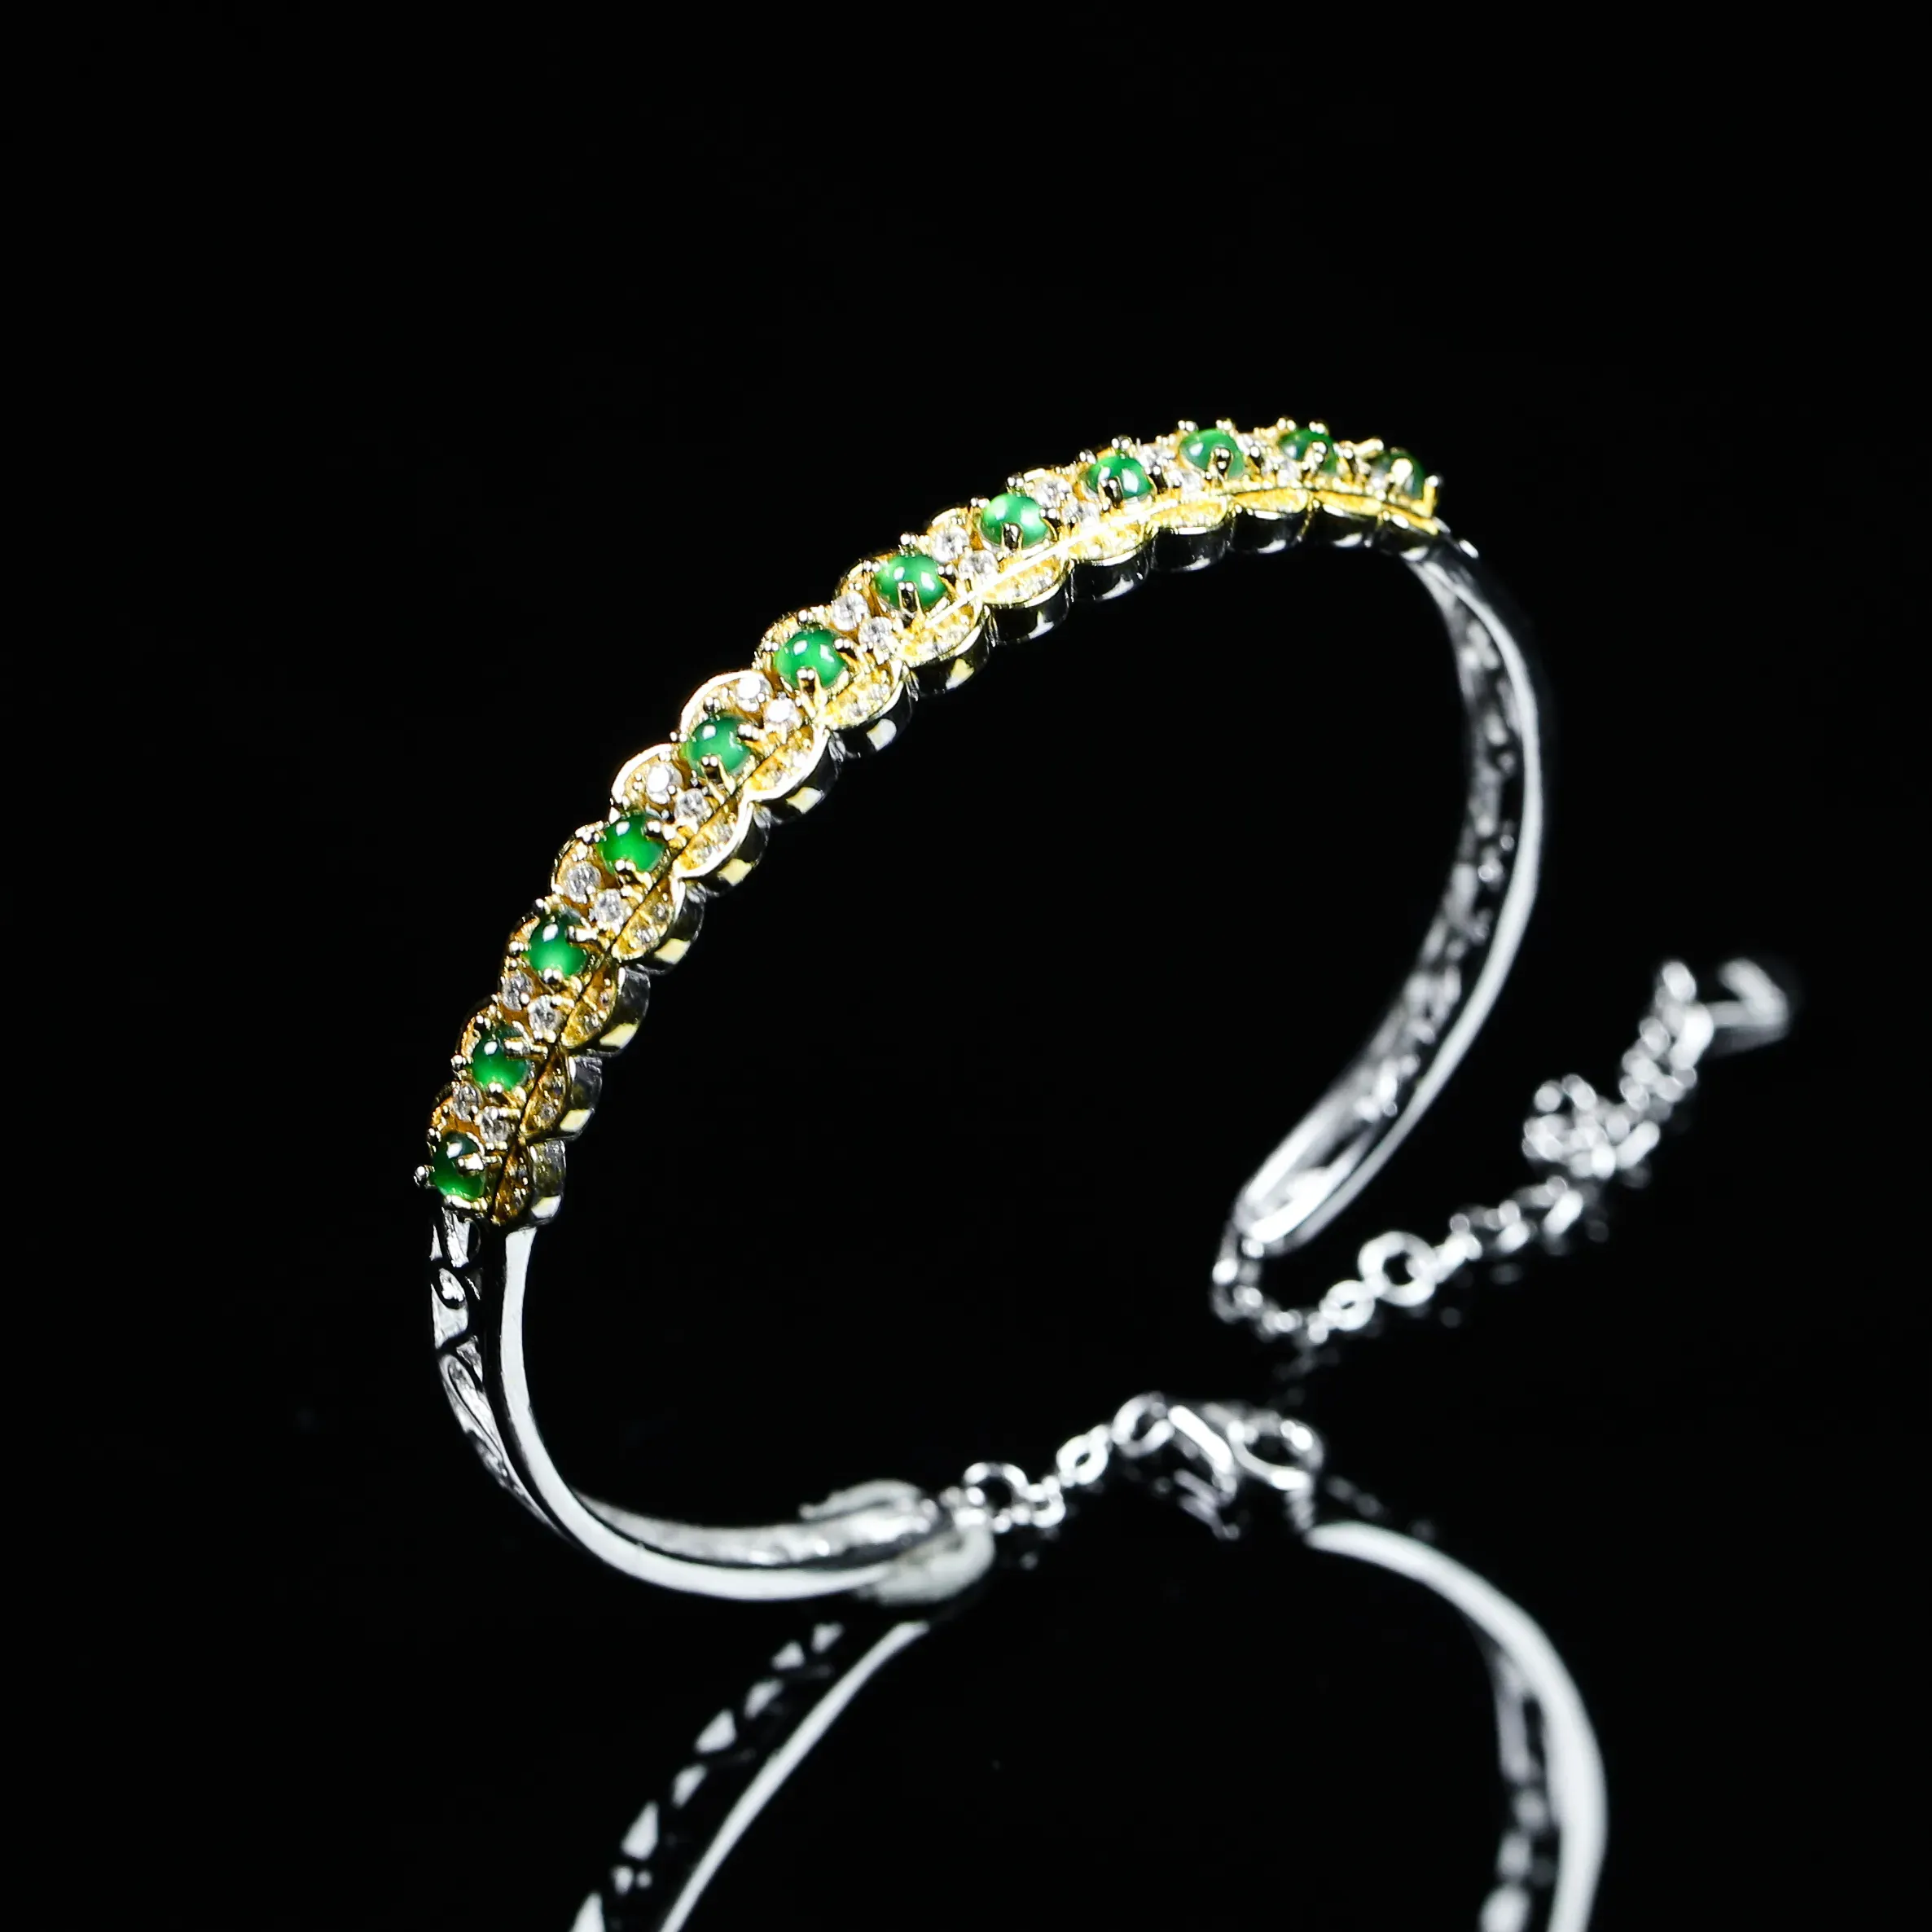 阳绿蛋面925银镶嵌手环，款式新颖时尚，裸石阳绿，莹润饱满，上手效果漂亮，裸石尺寸：2.6*2mm